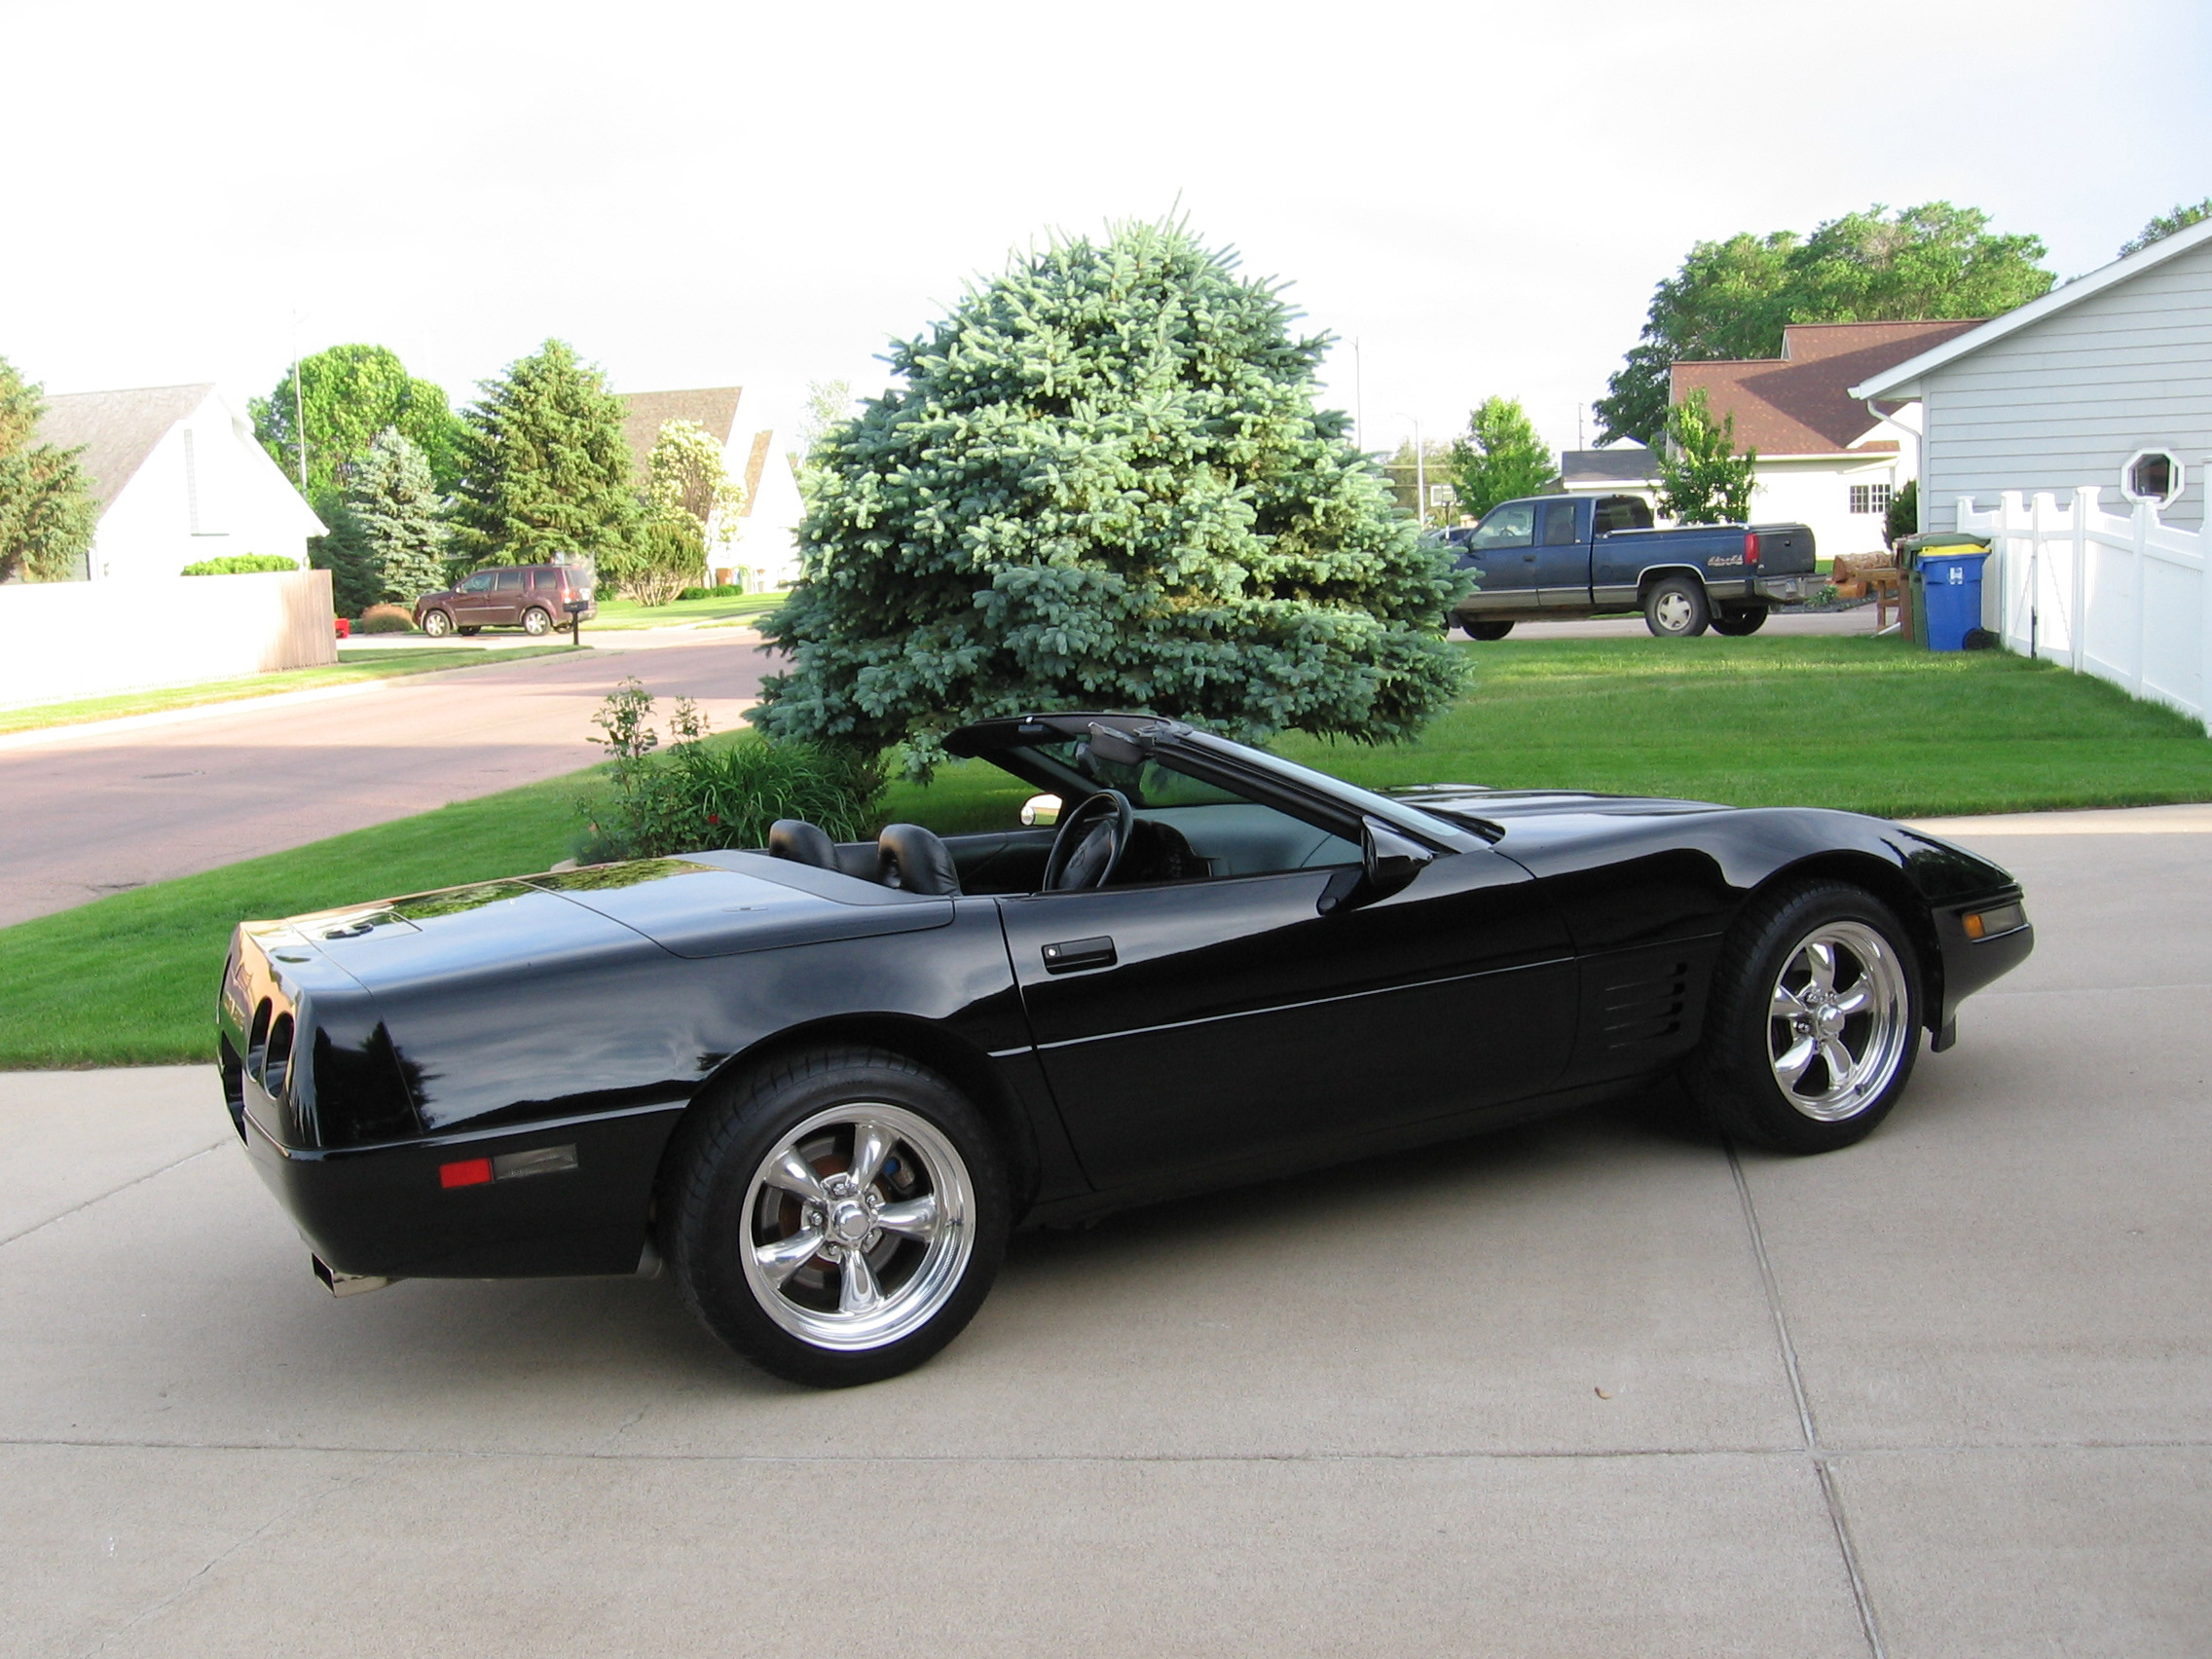 Classice 1995 Corvette Convertible